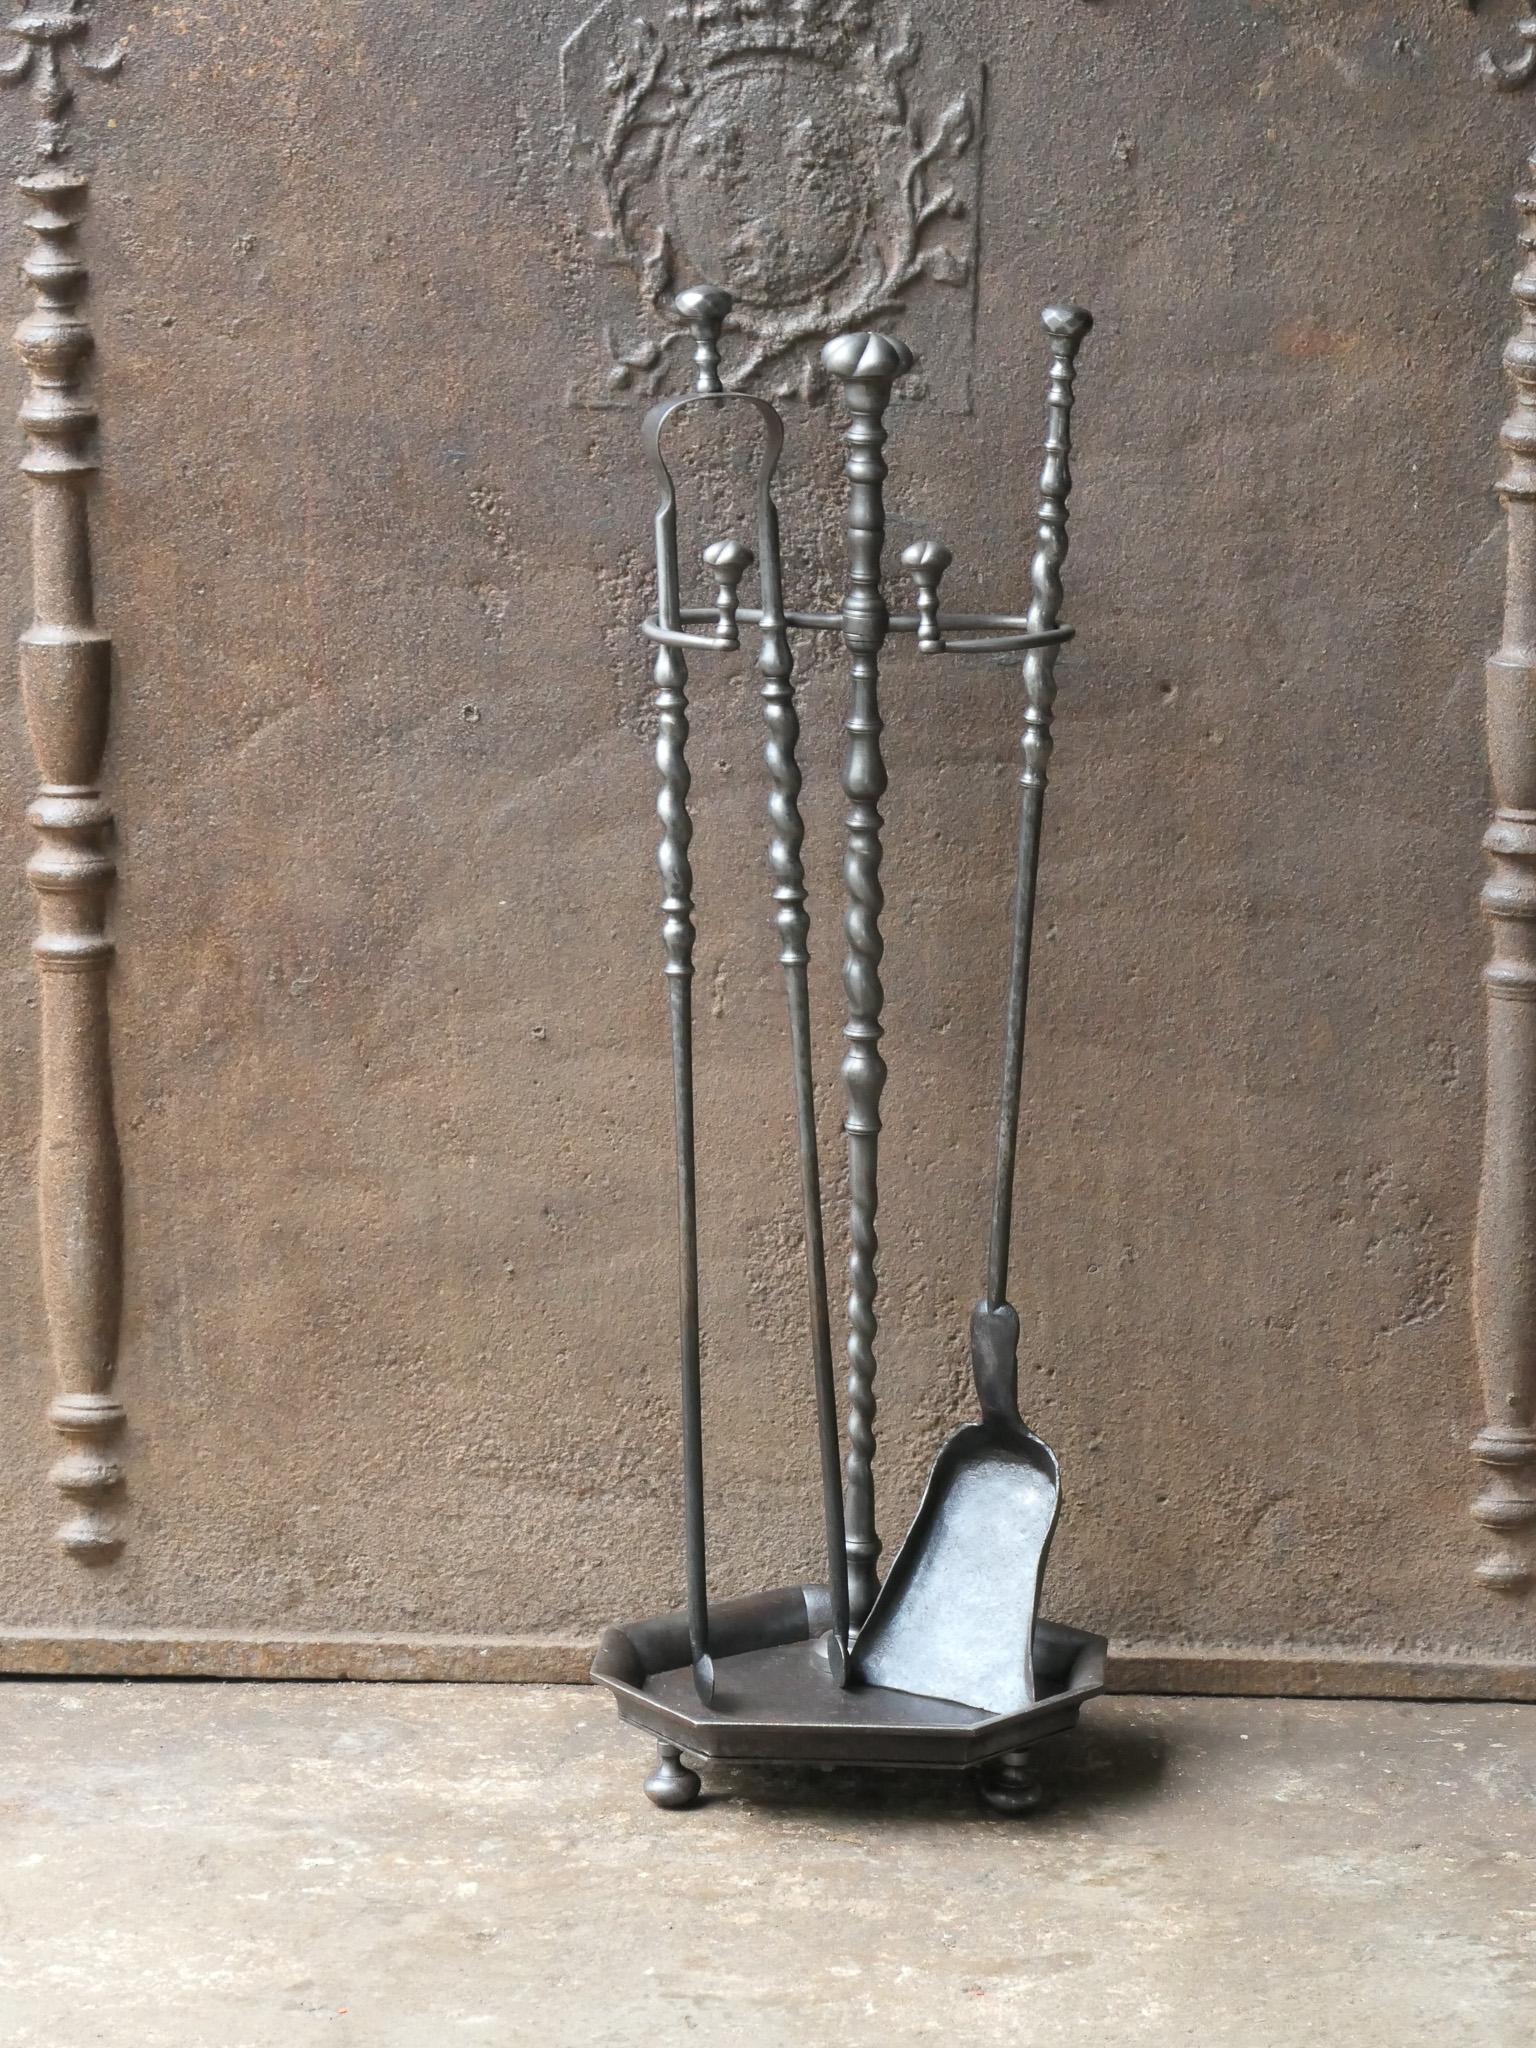 Französisches Kaminbesteck aus dem 19. Jahrhundert. Zeitraum Napoleon III. Das Werkzeugset besteht aus einer Zange, einer Schaufel und einem Ständer. Die Werkzeuge sind aus Schmiedeeisen und der Ständer aus Gusseisen gefertigt. Das Set ist in einem